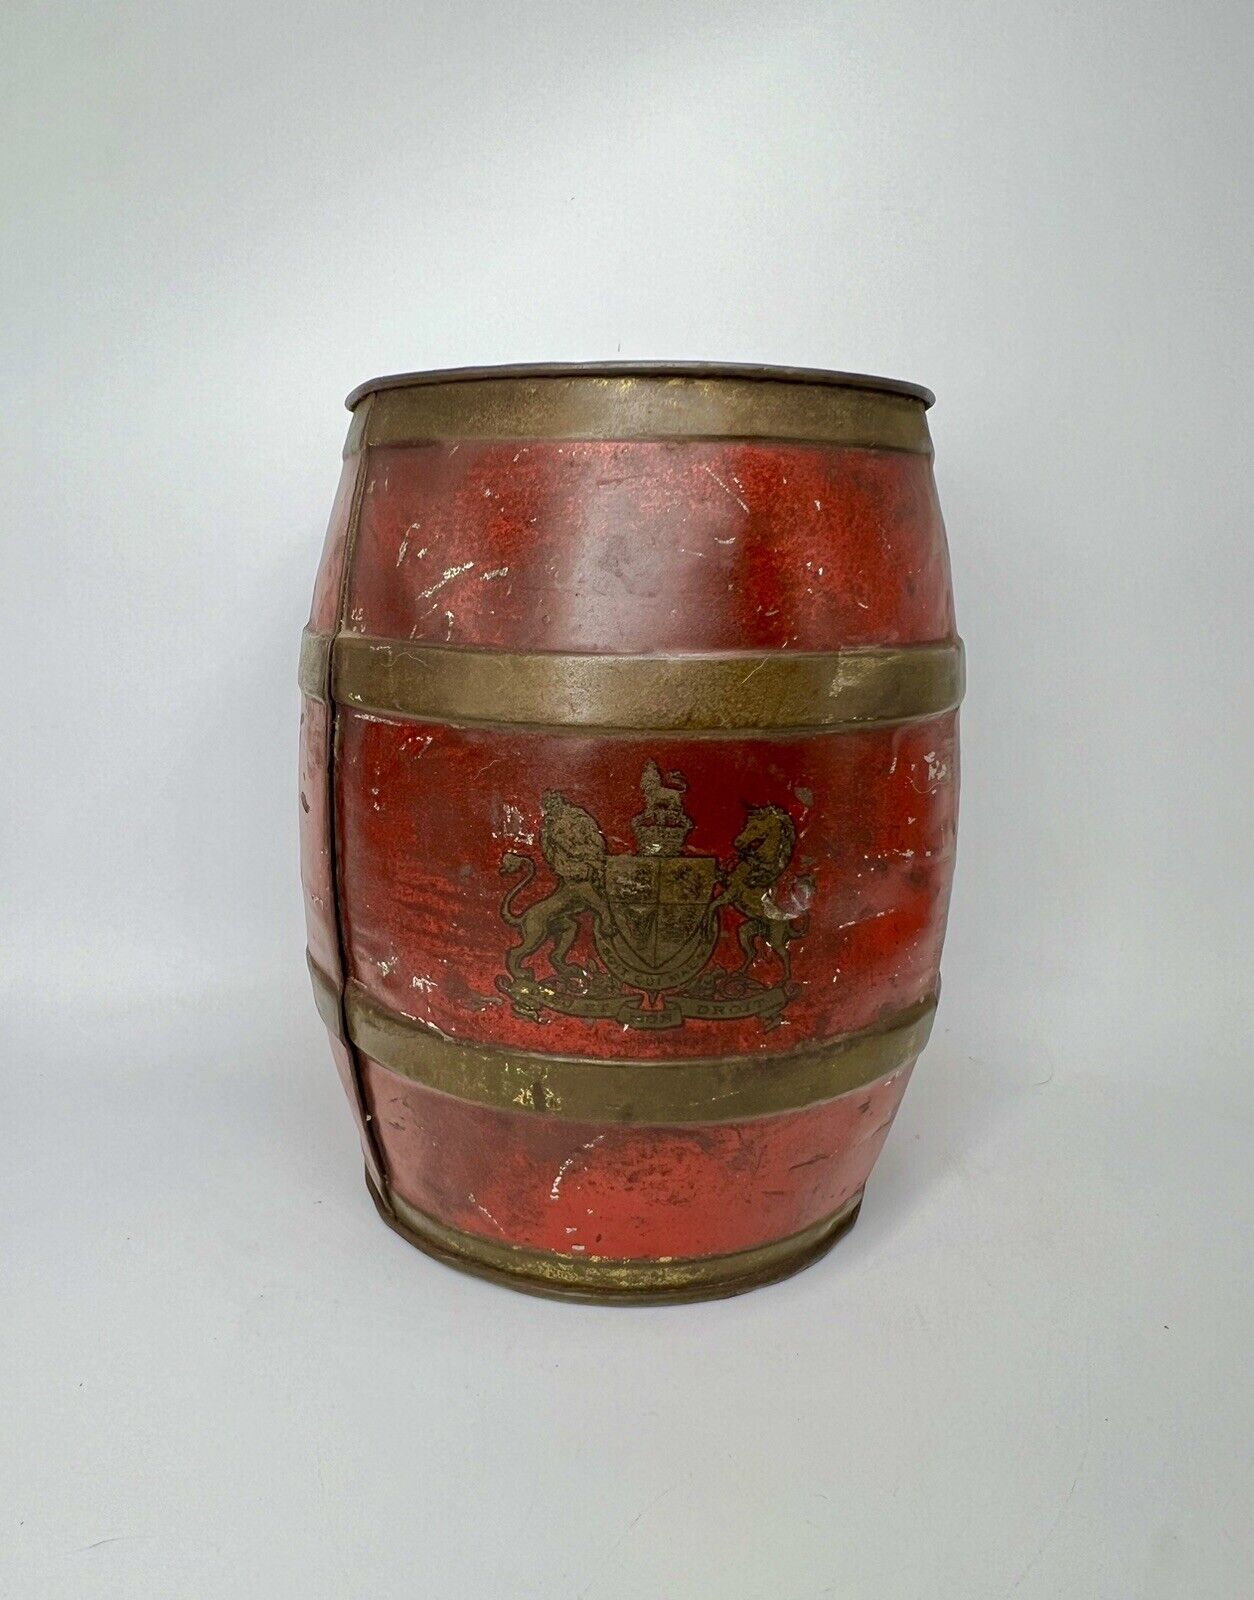 Antique 1800s J & J Colman Mustard Tin Store Display Advertising Barrel To King